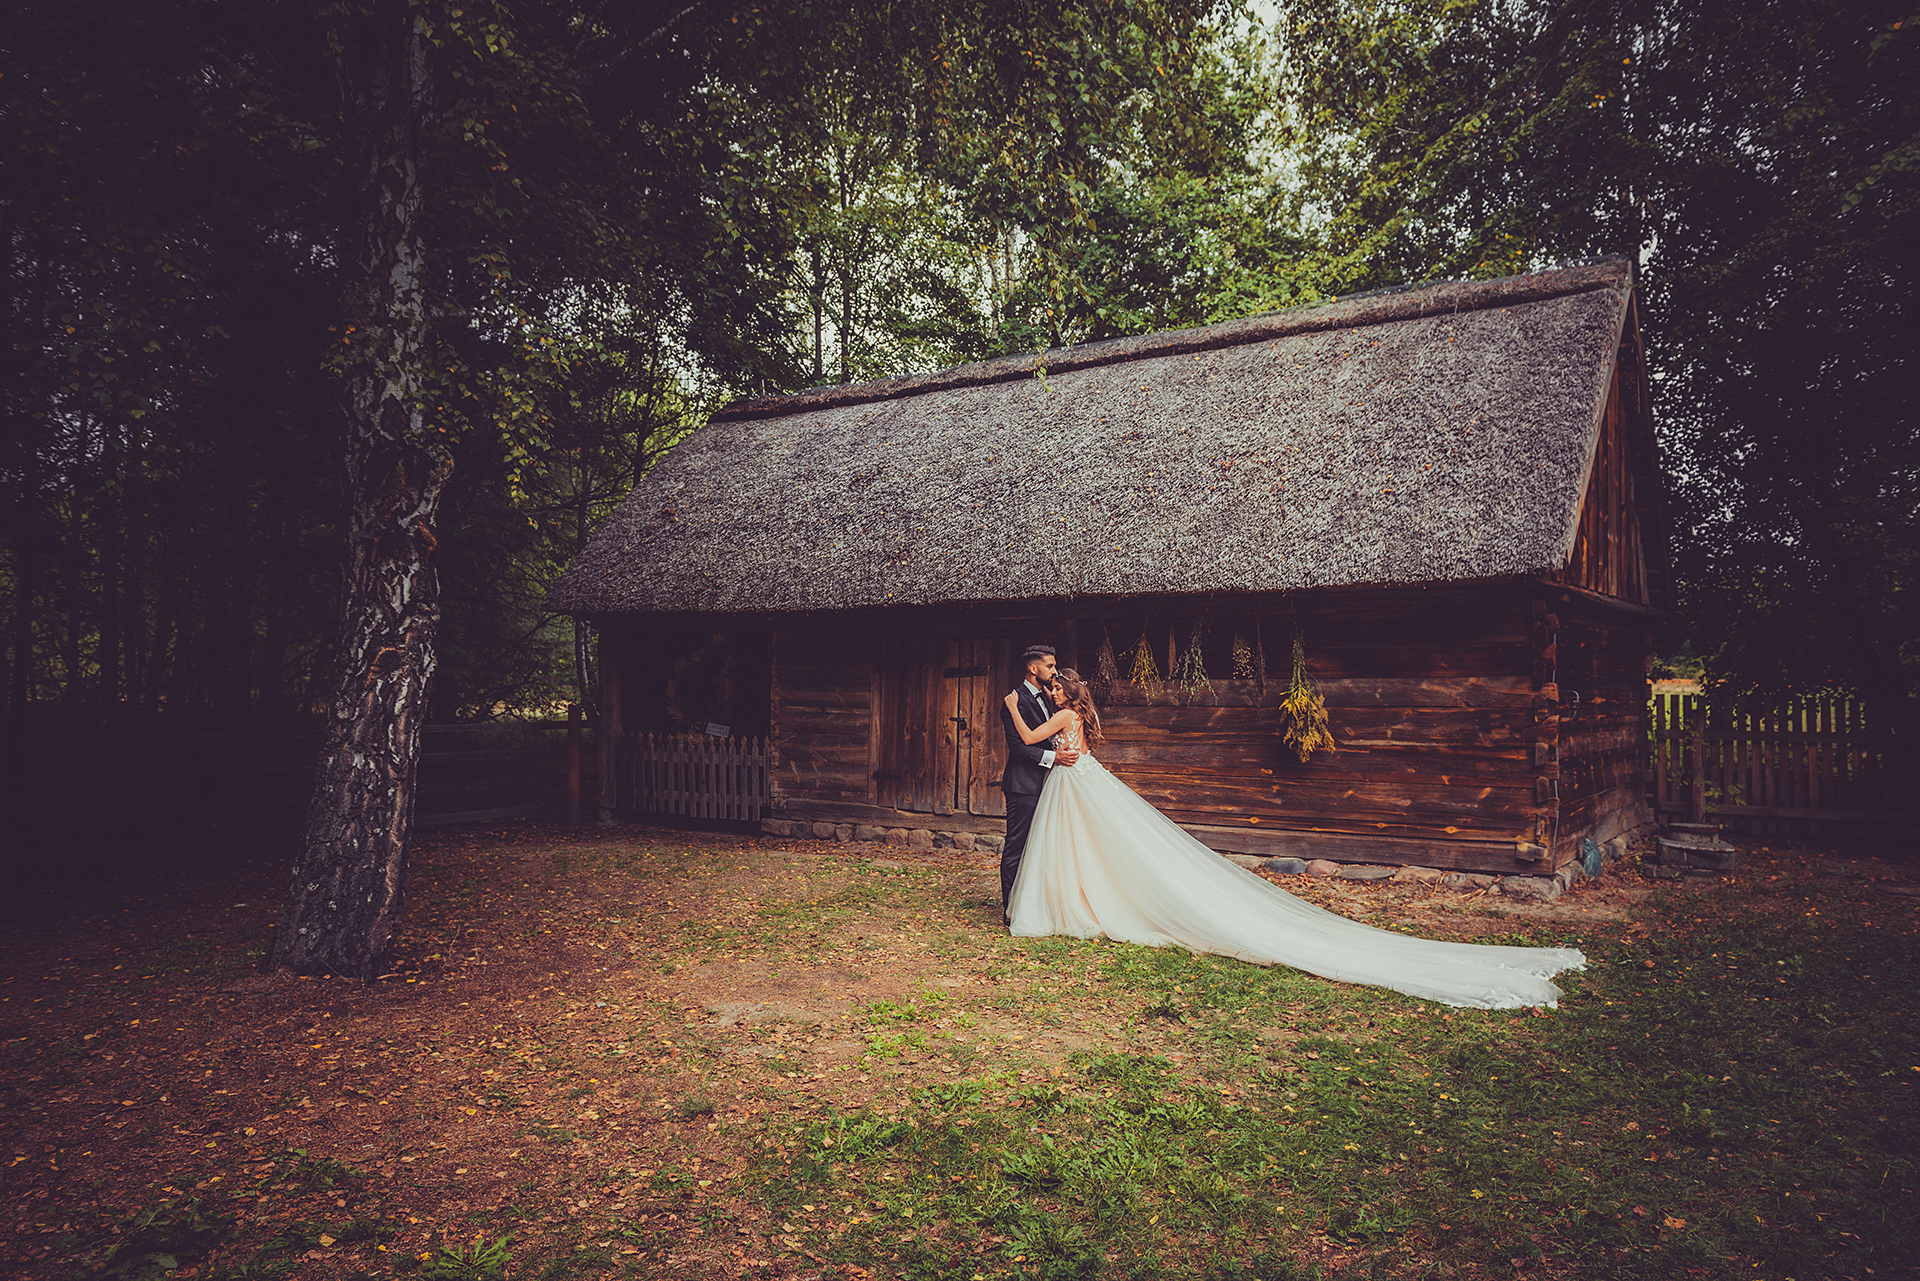 YES & YES wedding photojournalism | Fotograf ślubny Warszawa, mazowieckie - cover 2